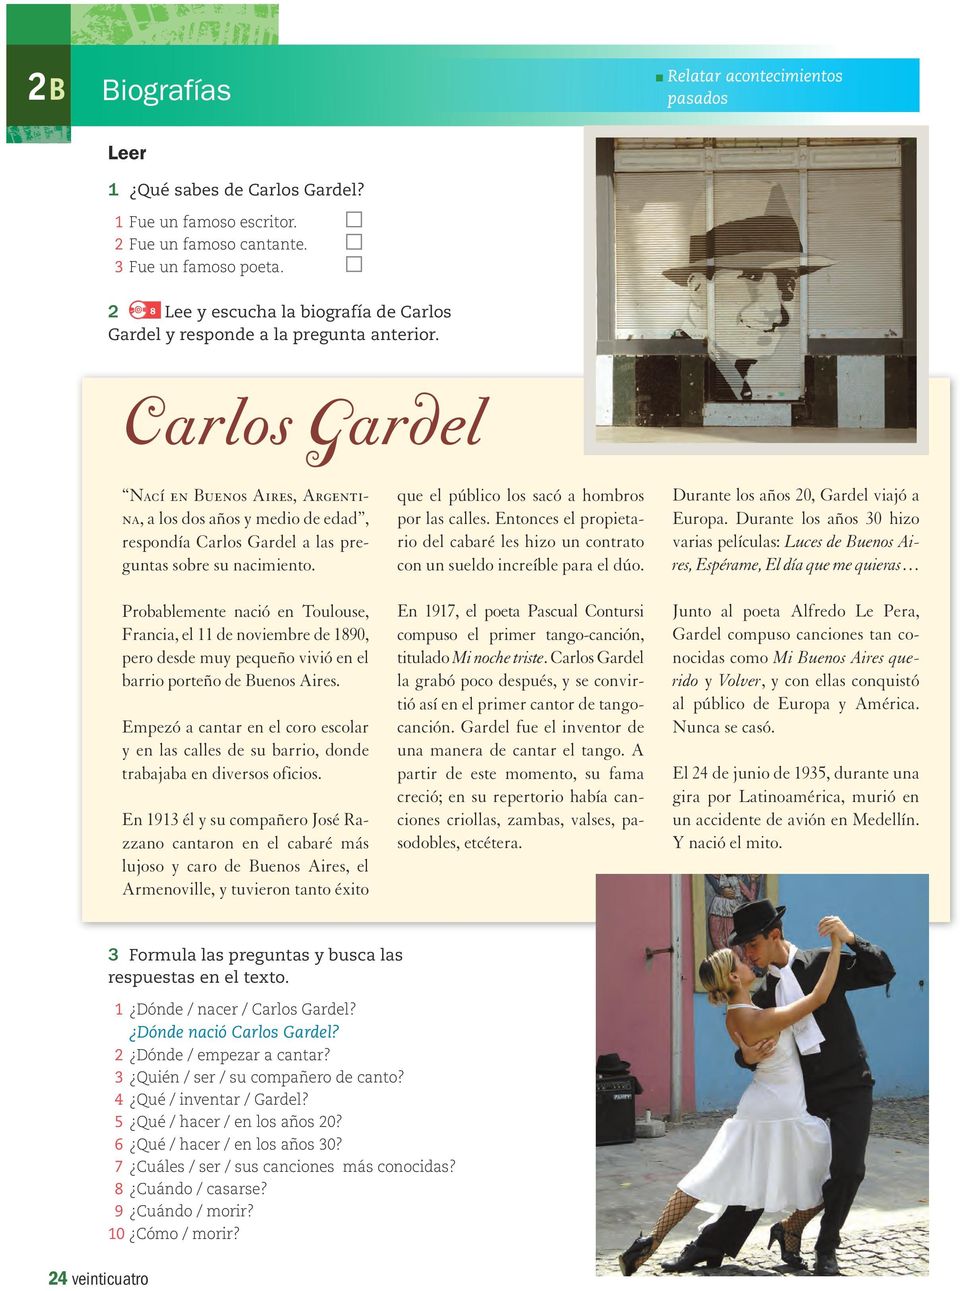 Carlos Gardel Nací en Buenos Aires, Argentina, a los dos años y medio de edad, respondía Carlos Gardel a las preguntas sobre su nacimiento.